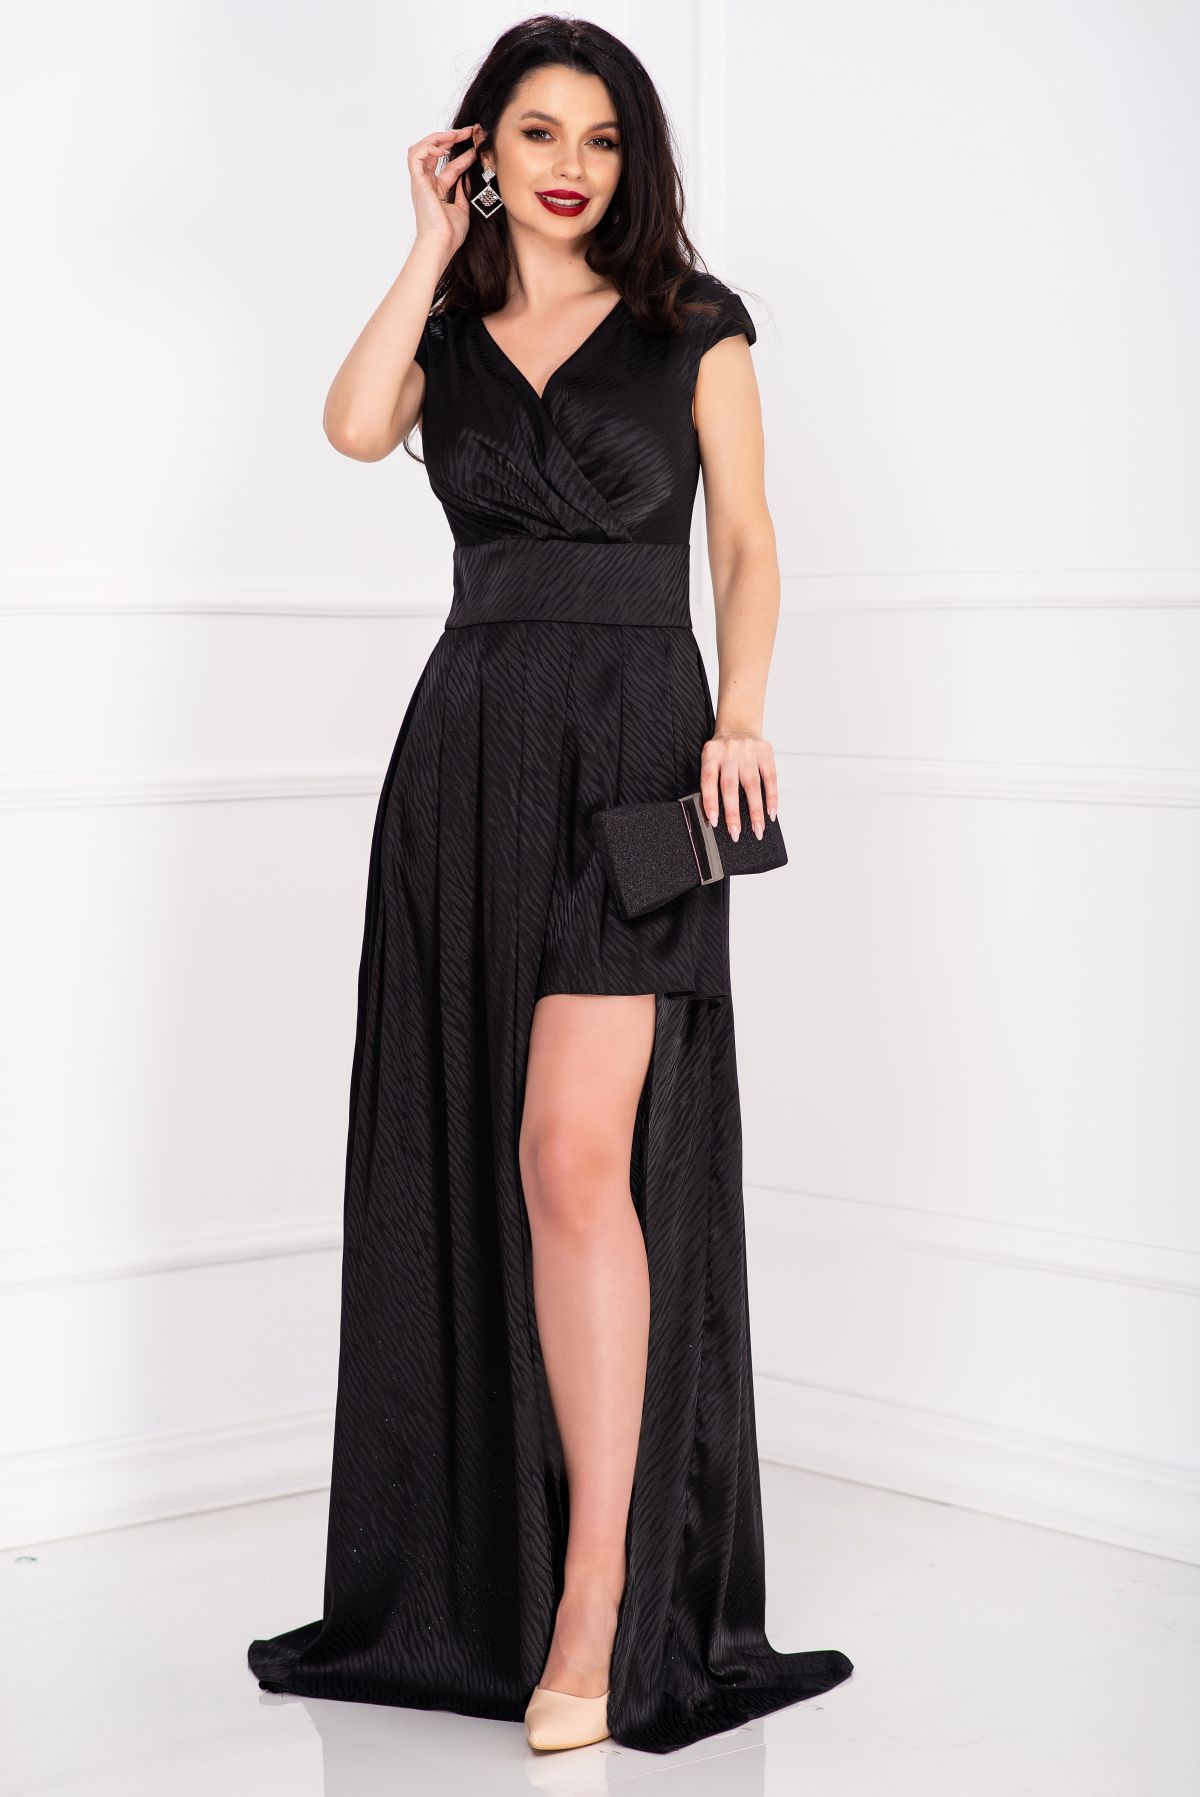 Rochie eleganta neagra dungata cu decupaj pe picior image8